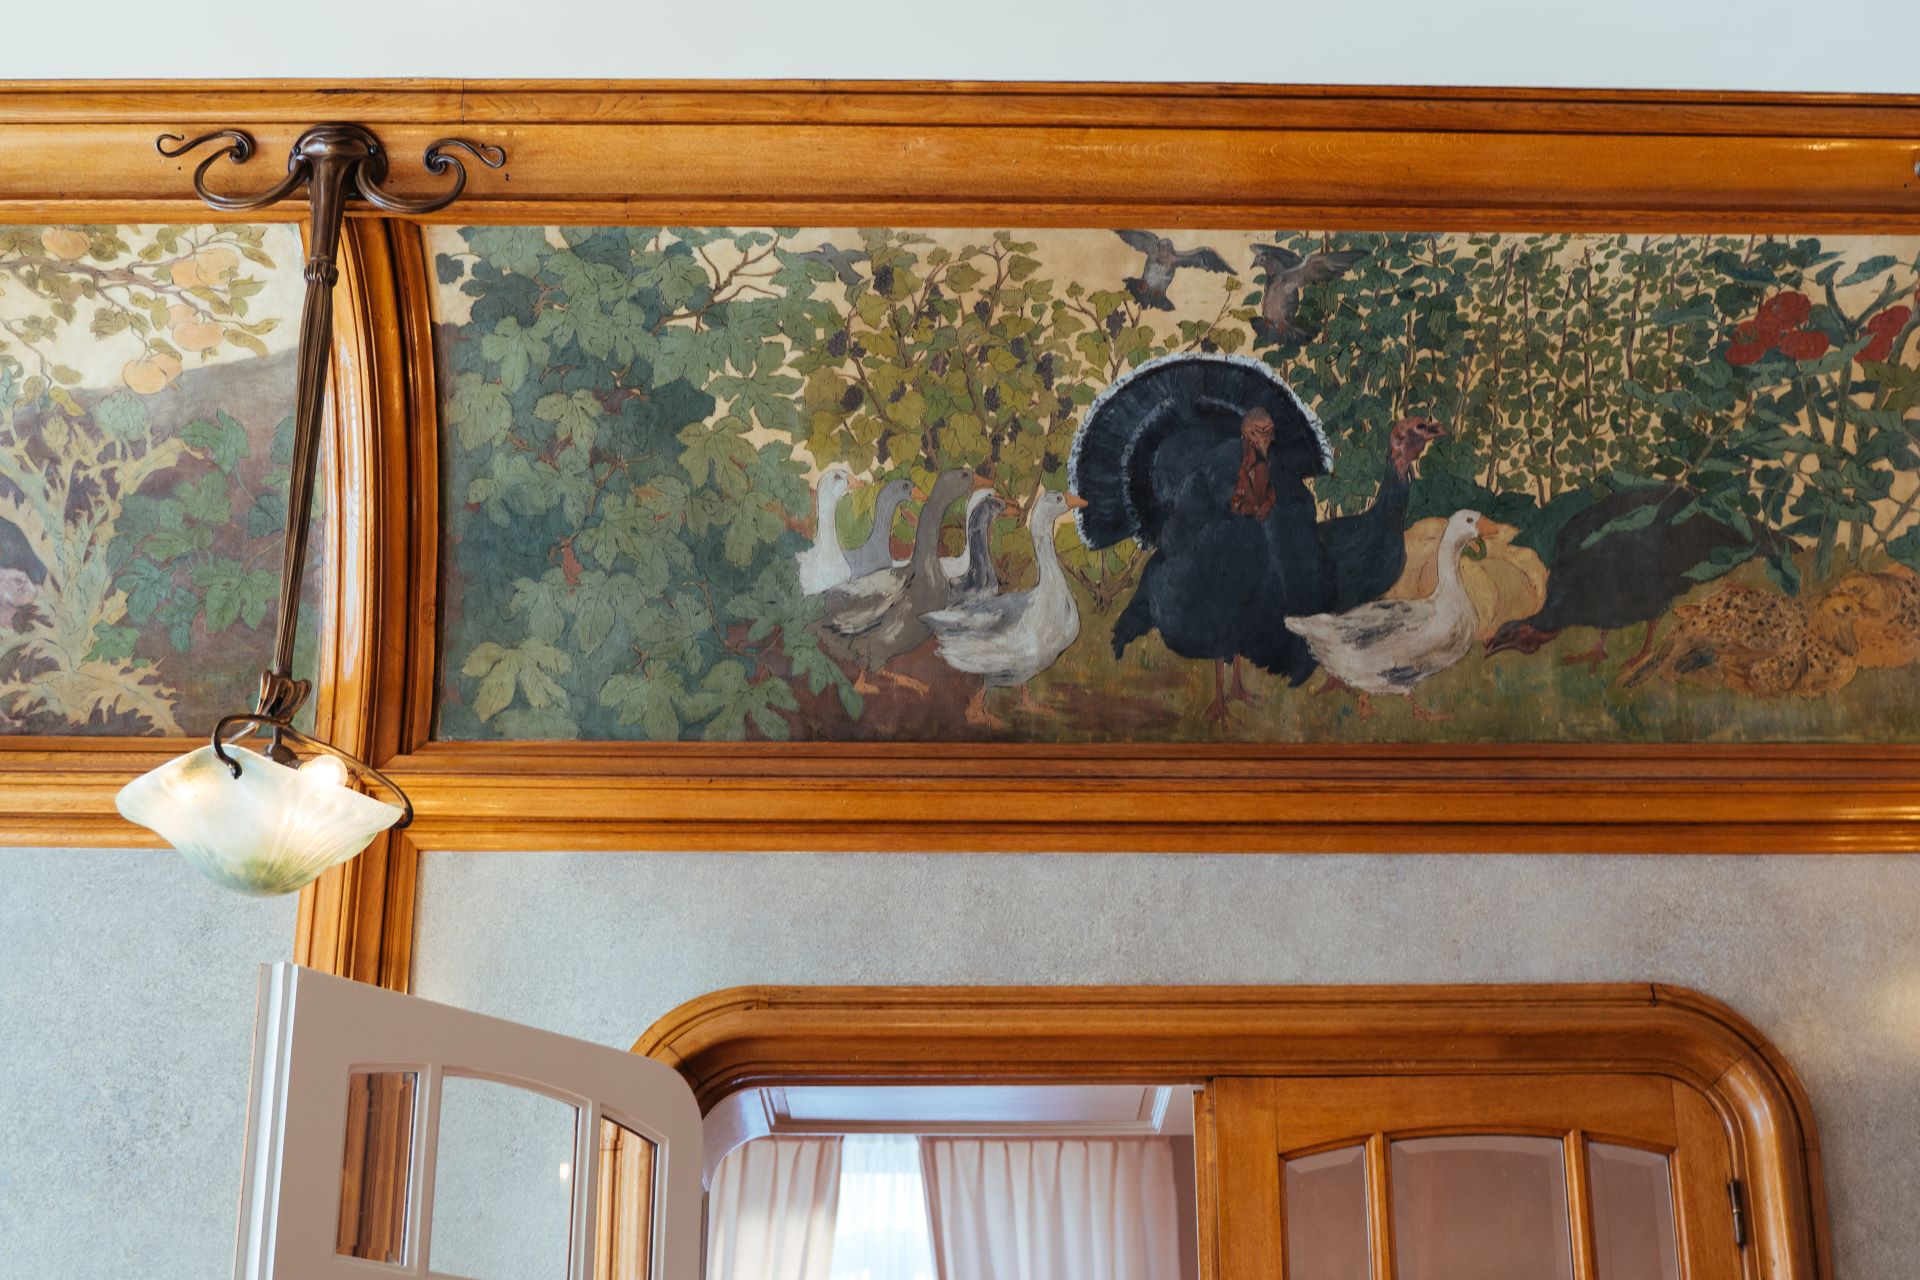 Im Inneren des Gebäudes ist der Einfluss der Natur deutlich zu spüren. Ein altes Gemälde zeigt einen Schwarm wilder Vögel, und das Gemälde ist von natürlichen Holzformen umgeben.